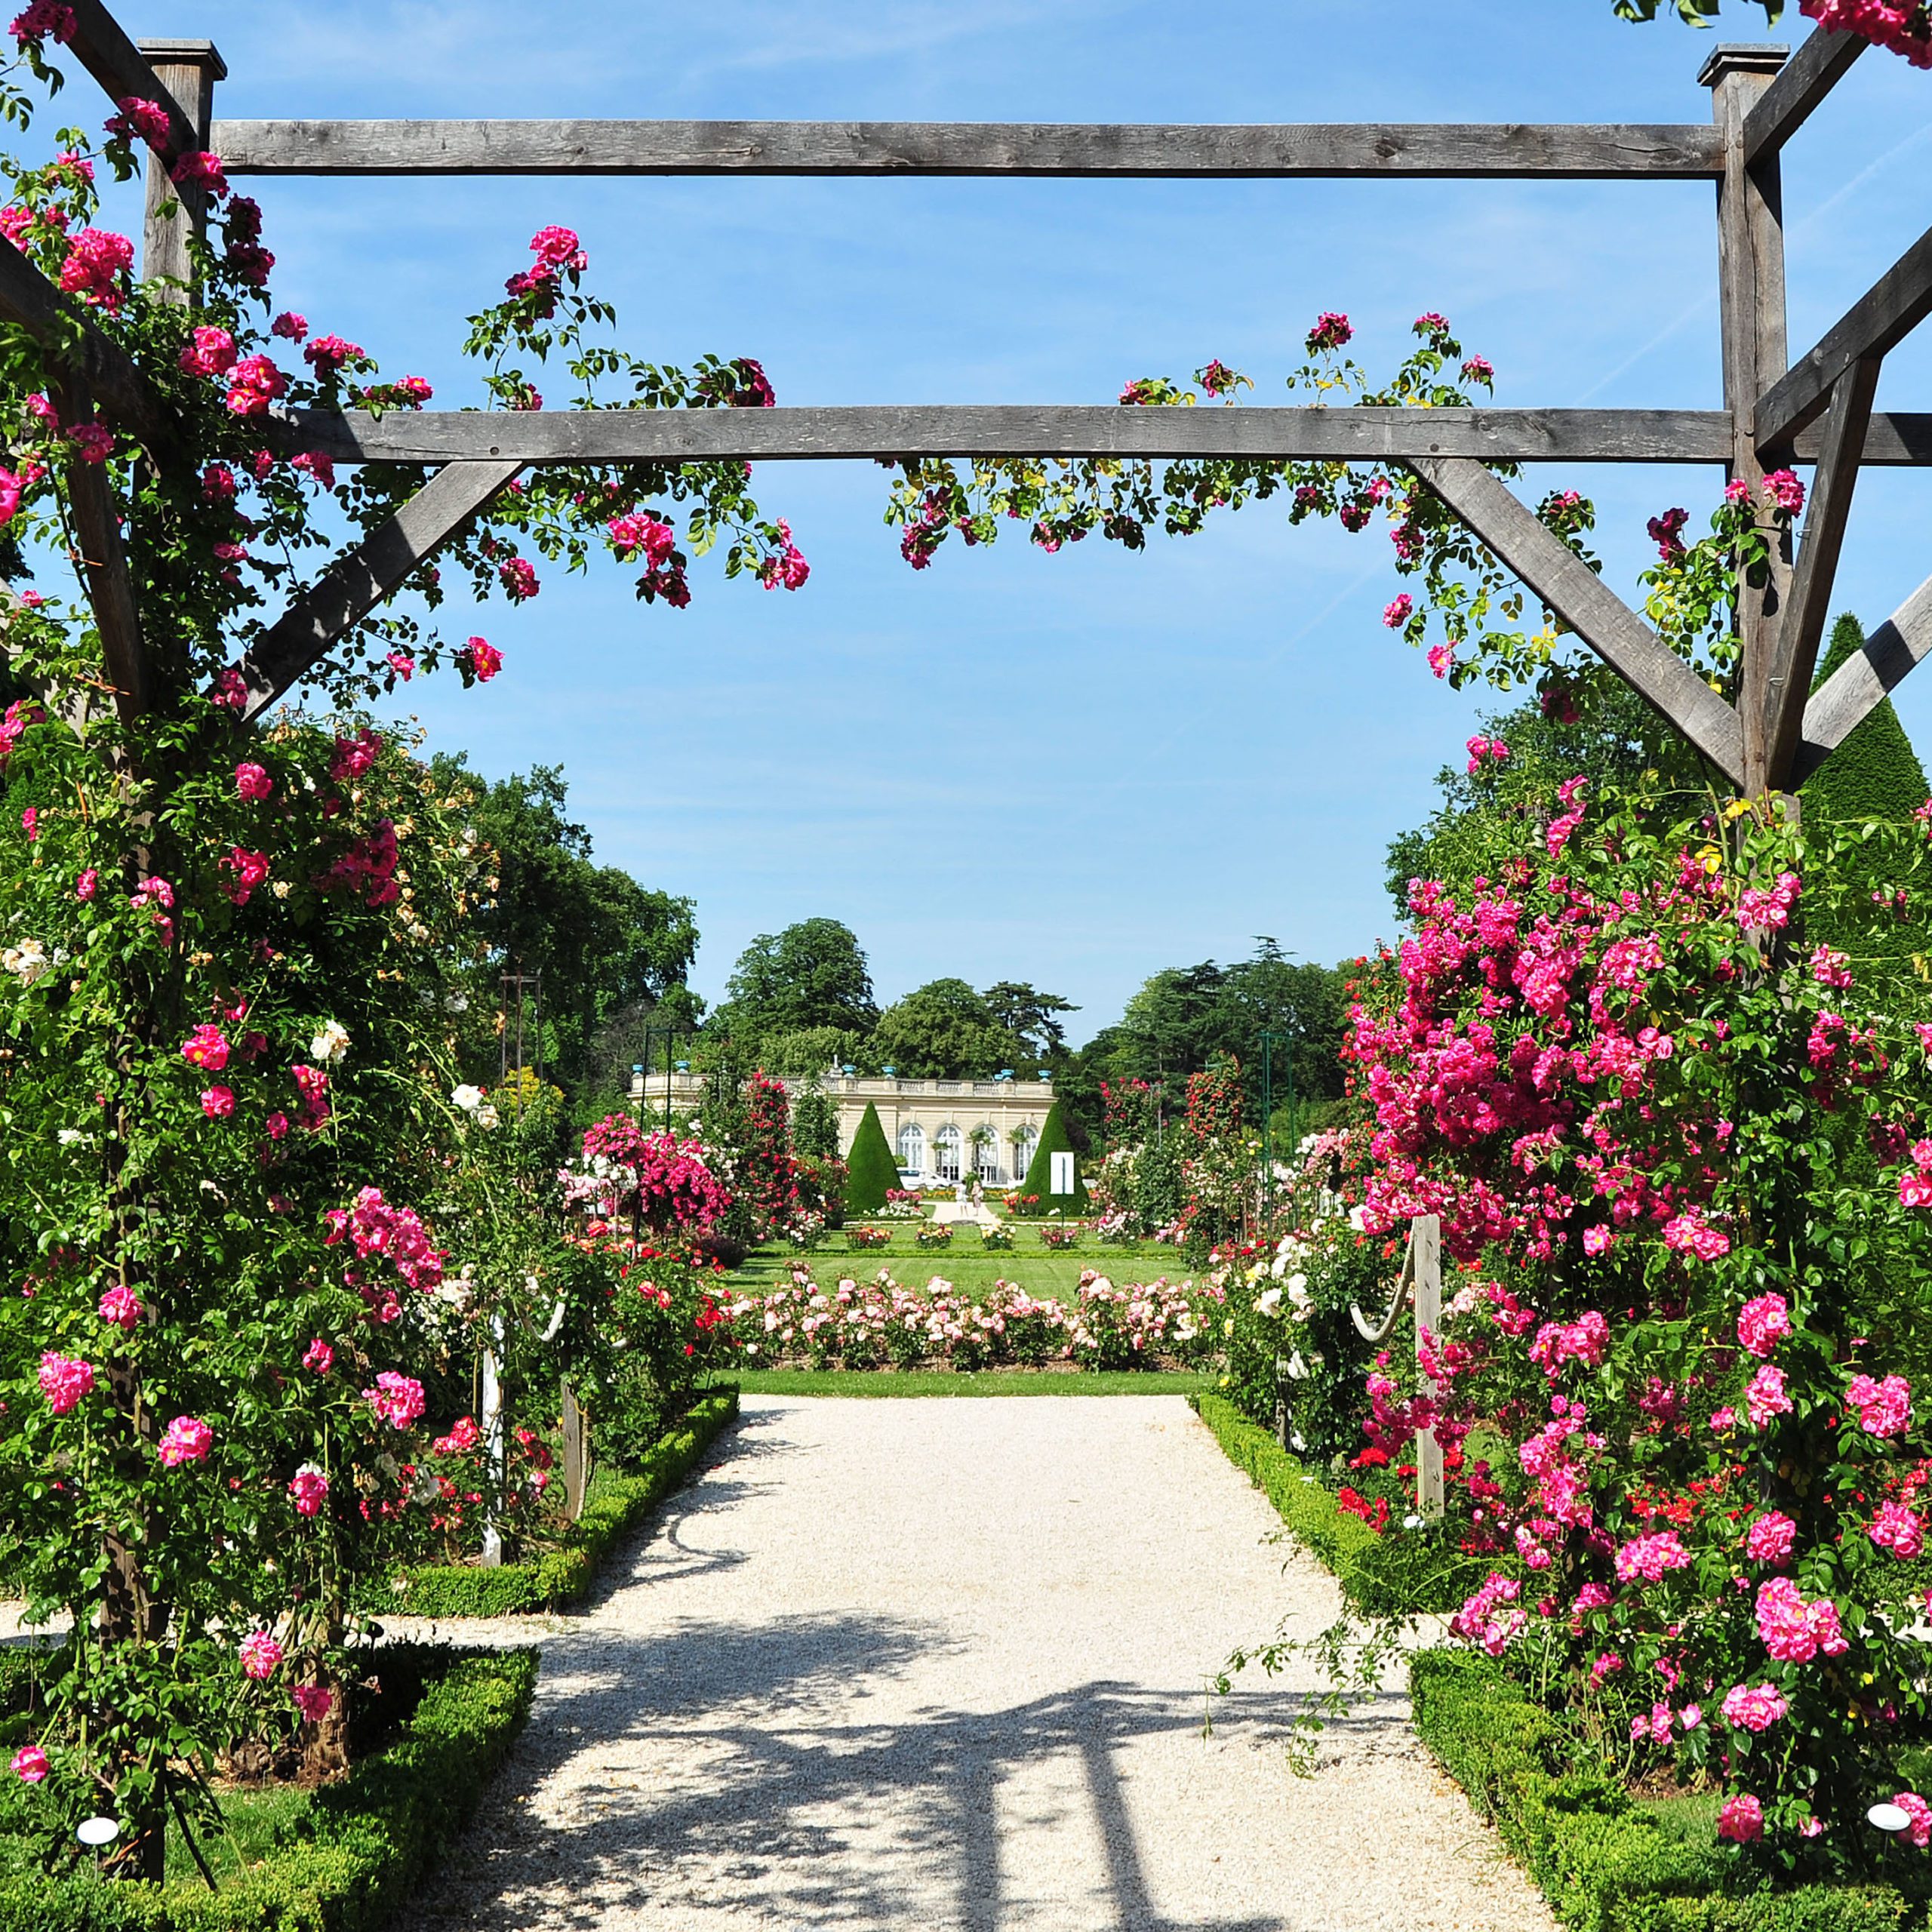 Bois de Boulogne, Parc de Bagatelle, rose garden and orangery. Bagatelle Parc, Paris, France.